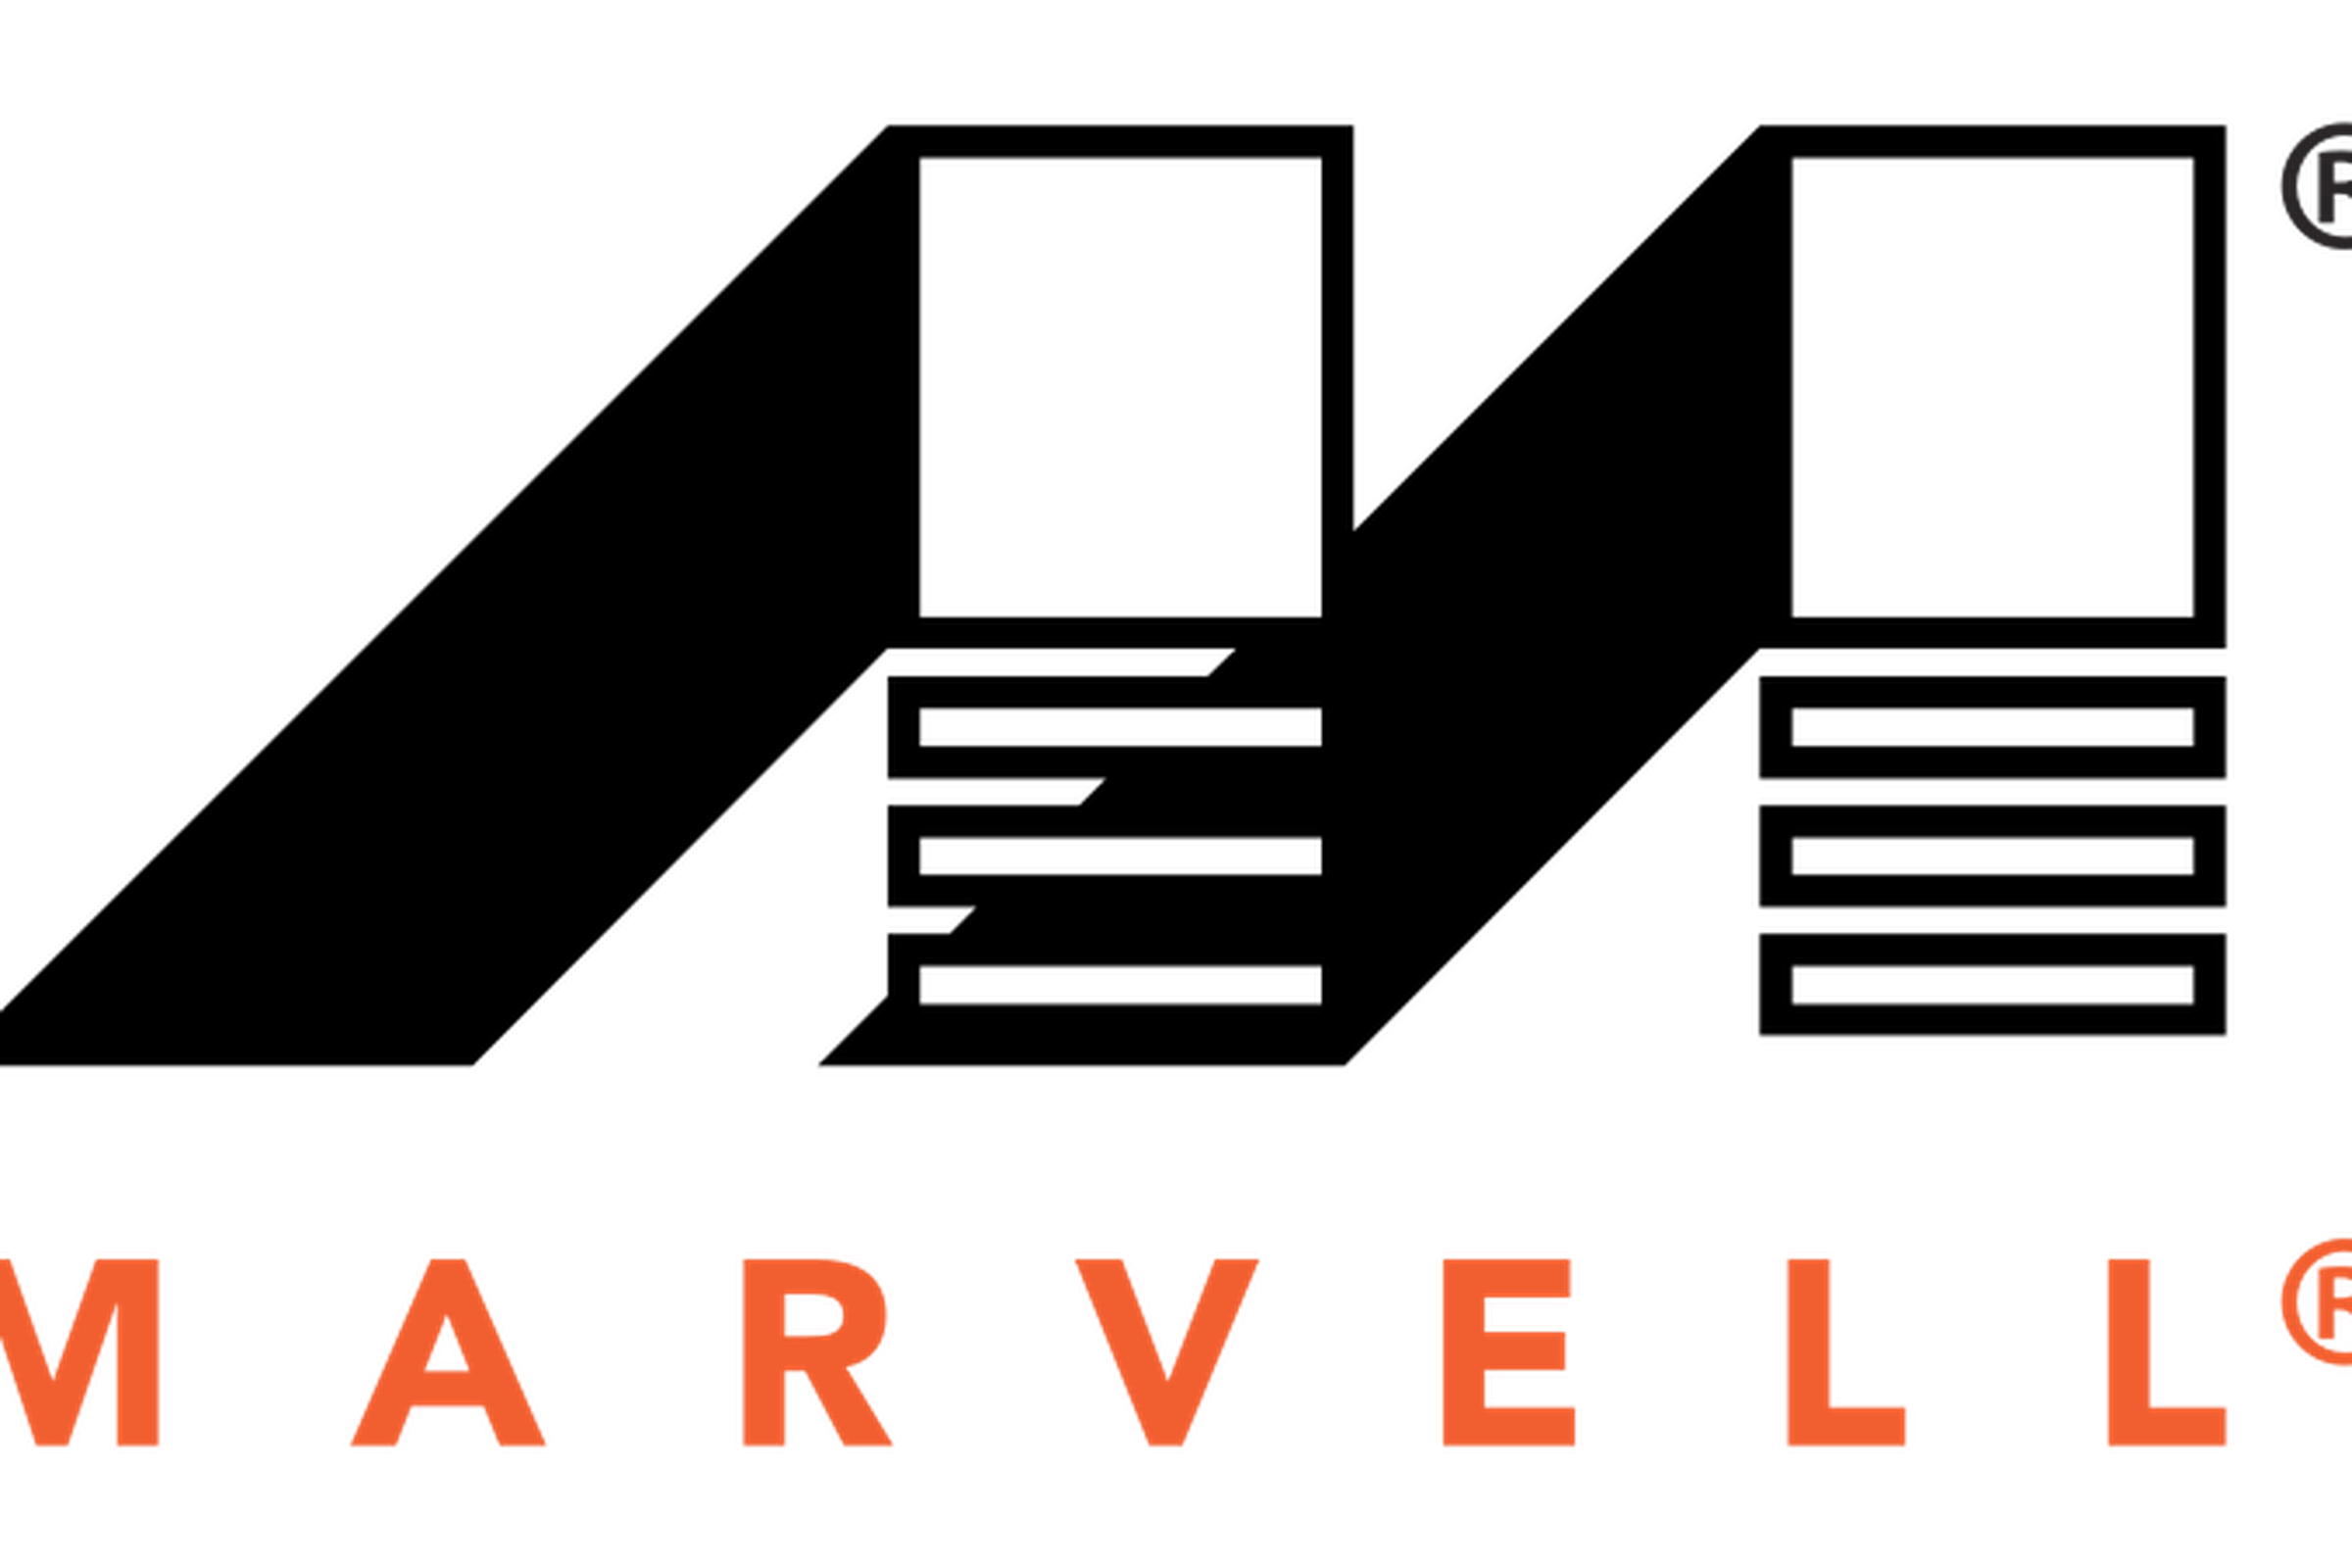 Marvell logo